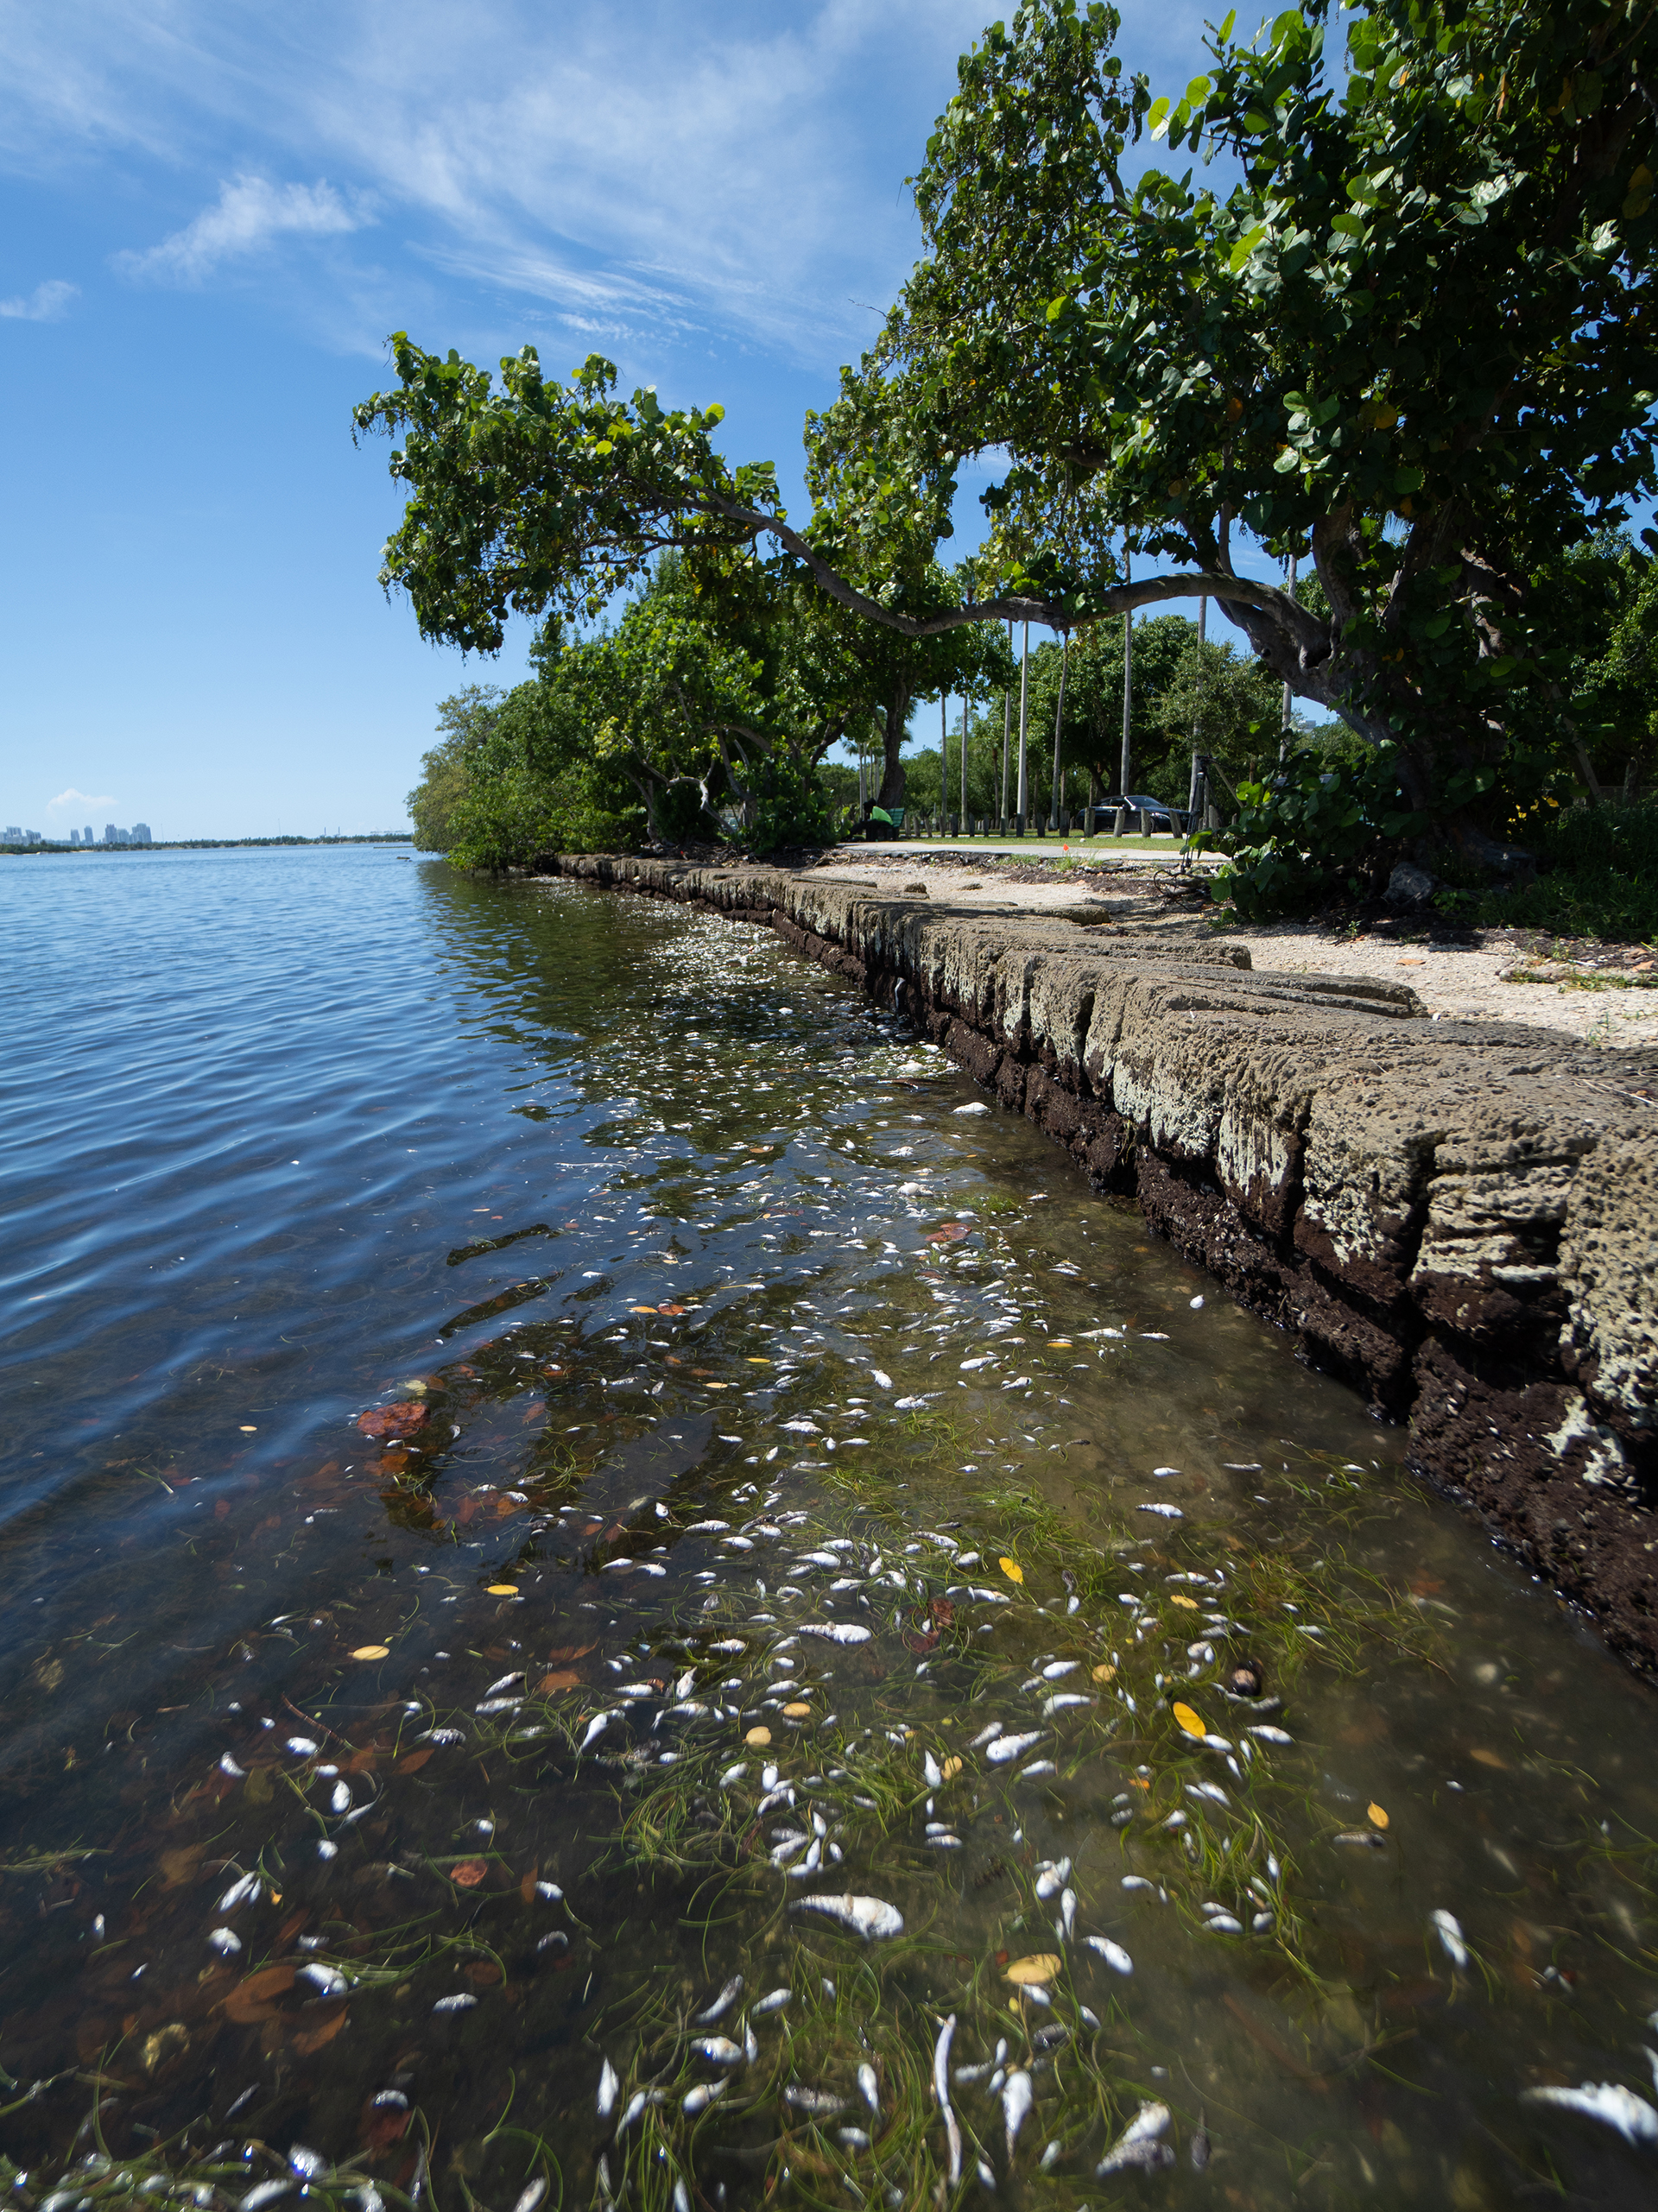 Para las autoridades locales, la limpieza de la bahía es un tema prioritario